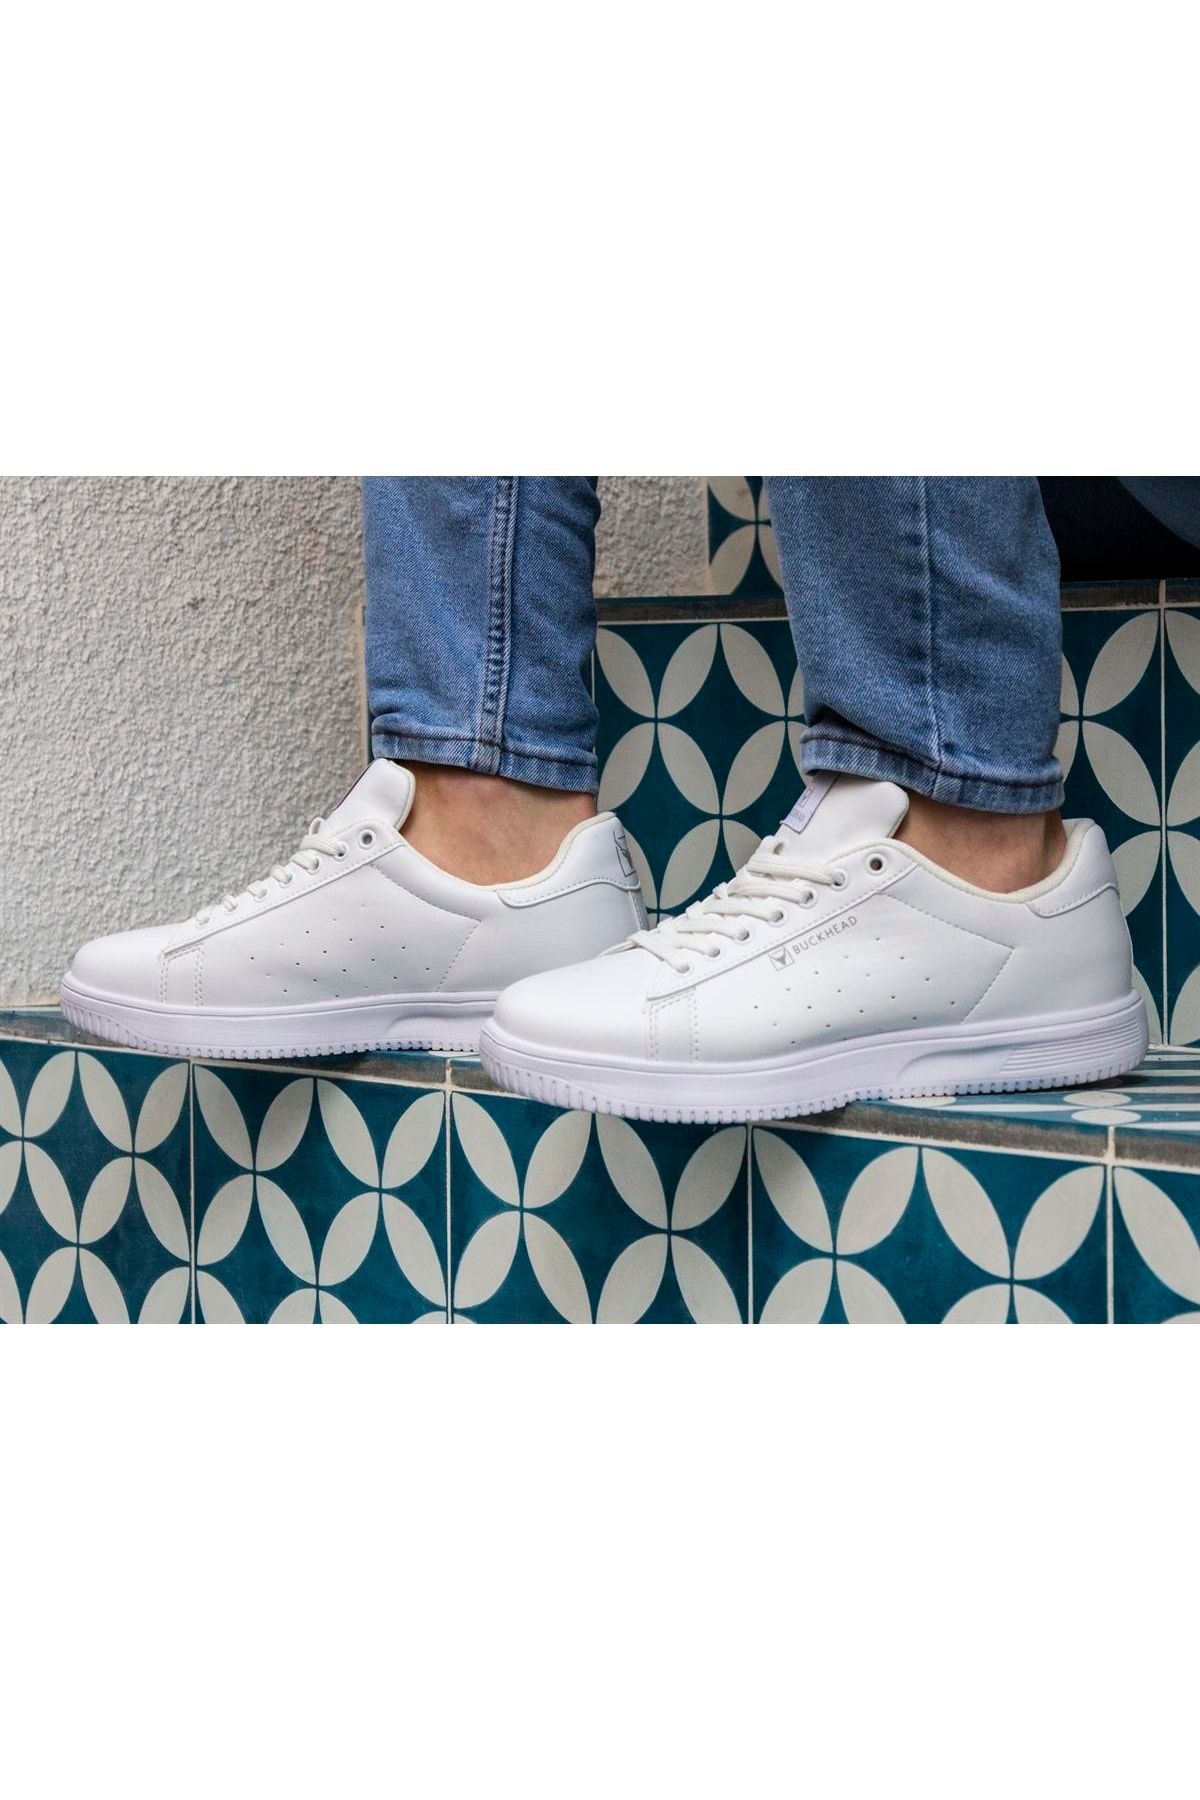 BUCKHEAD Beyaz Unisex Trend Confort Taban Sneaker Günlük Spor Ayakkabı